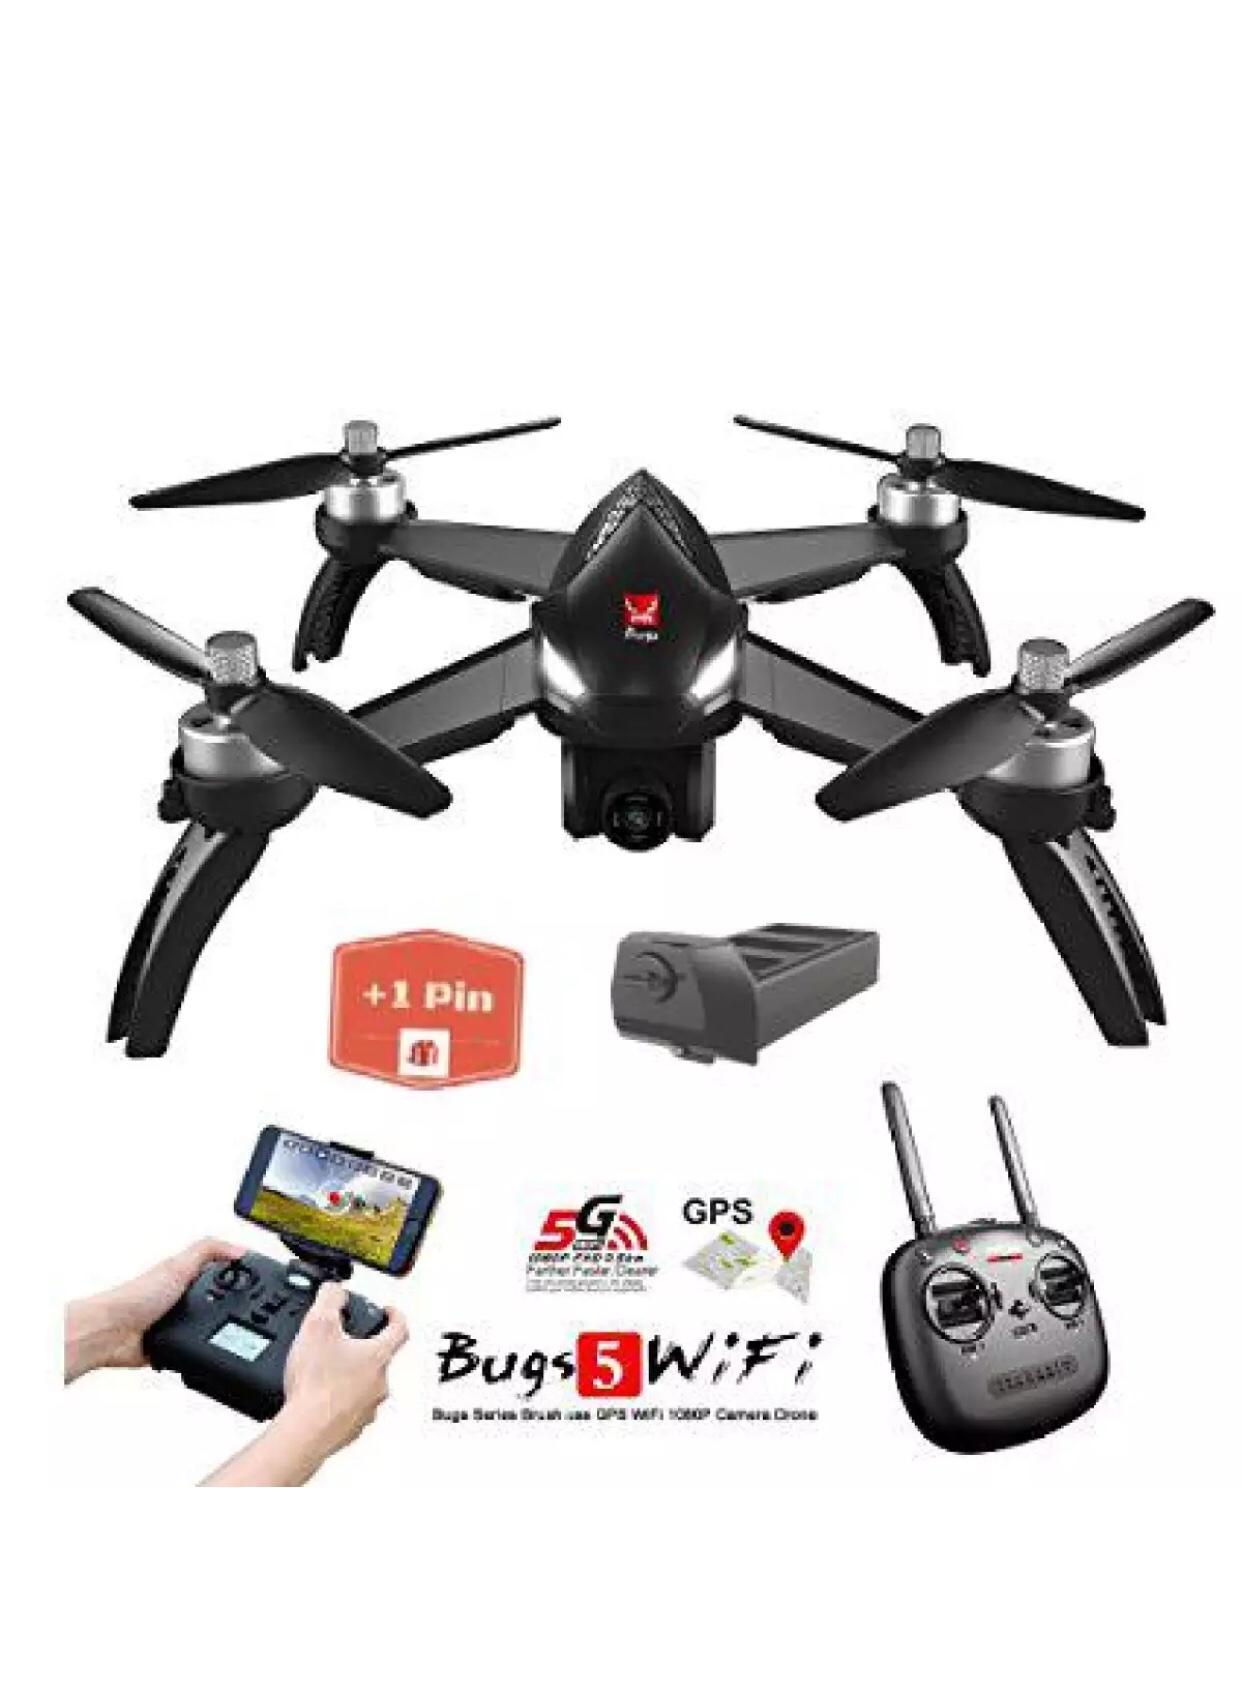 ( GỒM 2 PIN ) Flycam MJX Bugs 5W - Động cơ không chổi than, GPS, Camera 8.0MP, Sóng 2.4Ghz